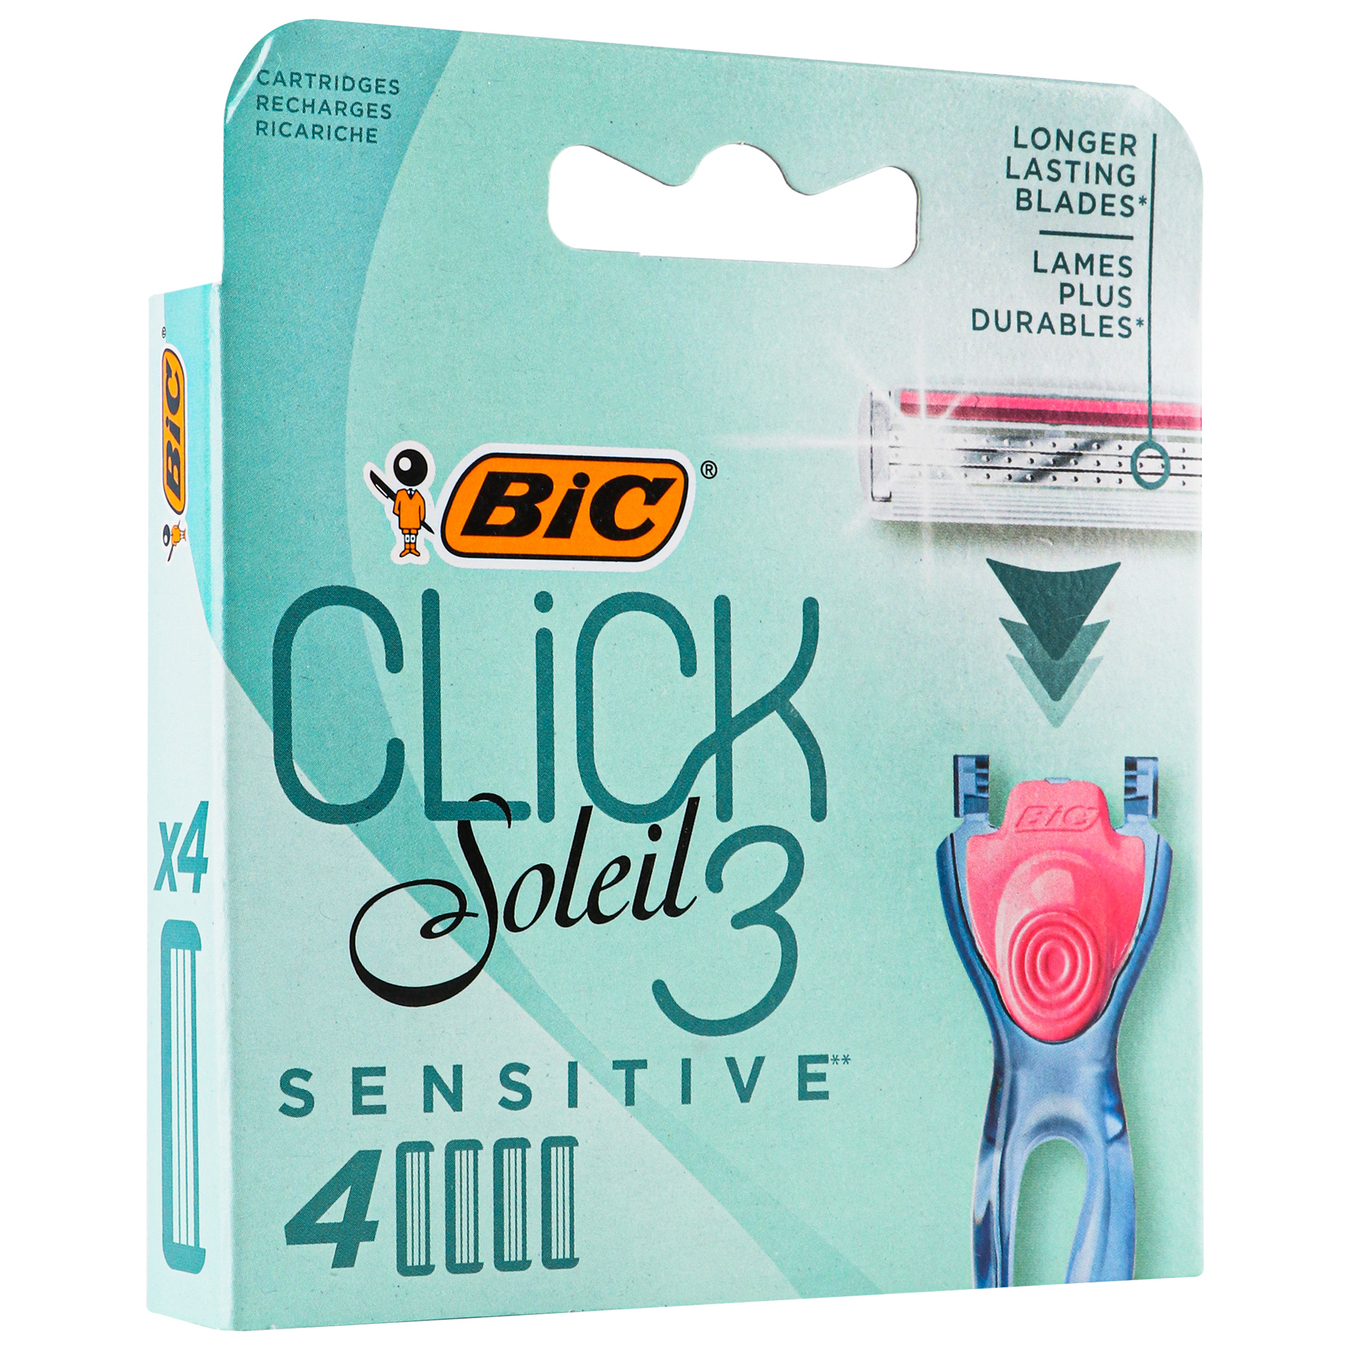 Змінні касети BIC Click Soleil 3 для гоління жіночі 4 шт 2